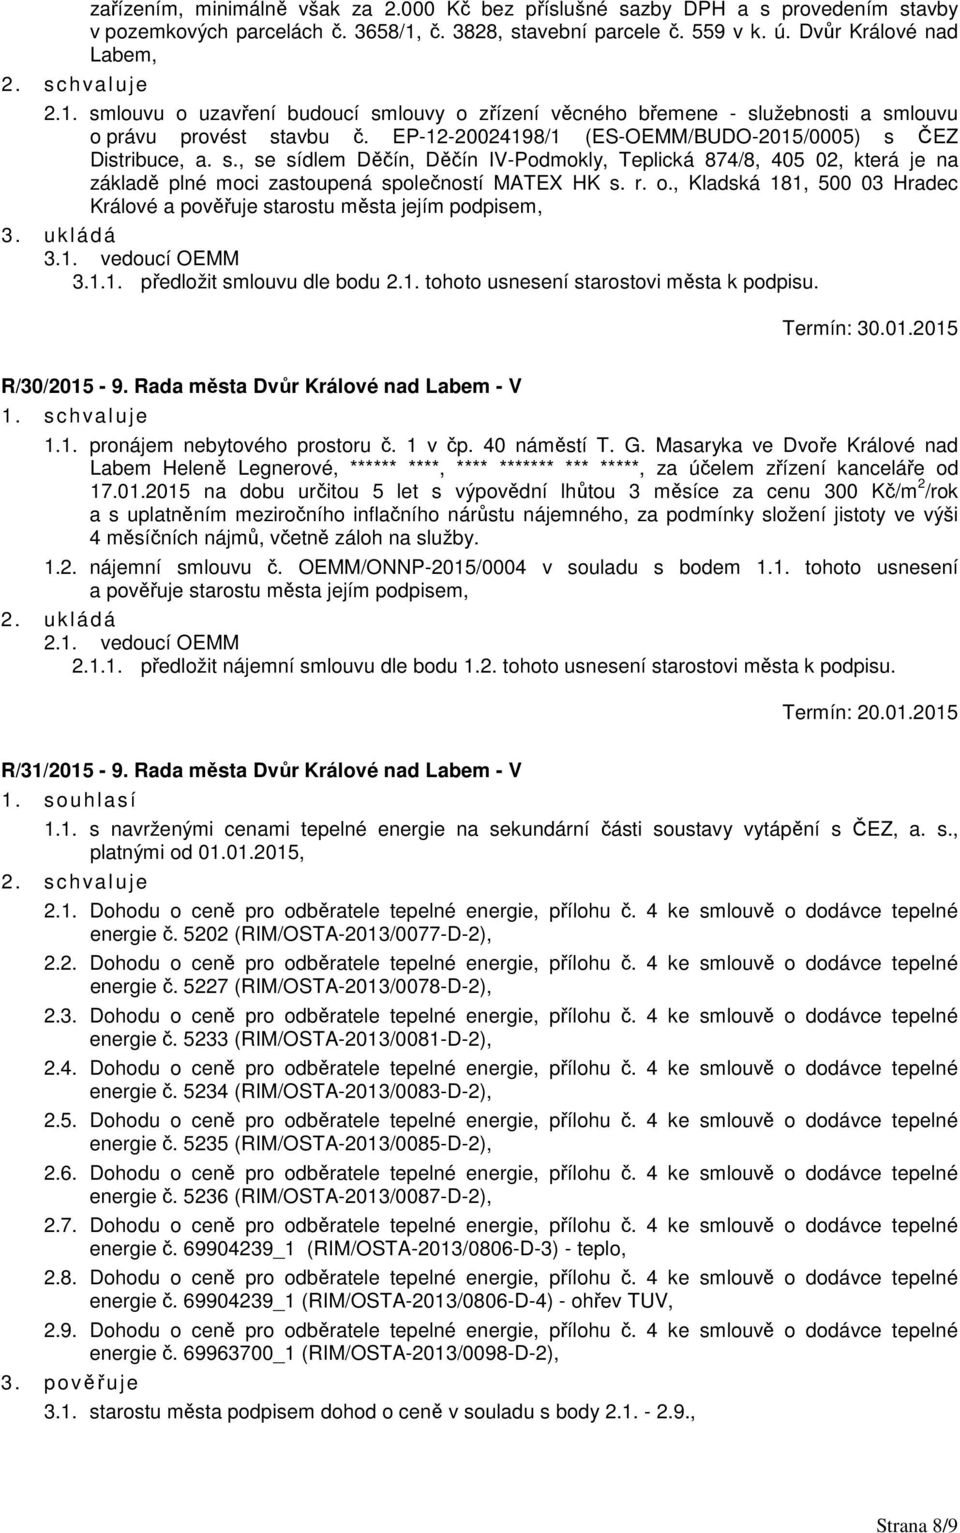 EP-12-20024198/1 (ES-OEMM/BUDO-2015/0005) s ČEZ Distribuce, a. s., se sídlem Děčín, Děčín IV-Podmokly, Teplická 874/8, 405 02, která je na základě plné moci zastoupená společností MATEX HK s. r. o.